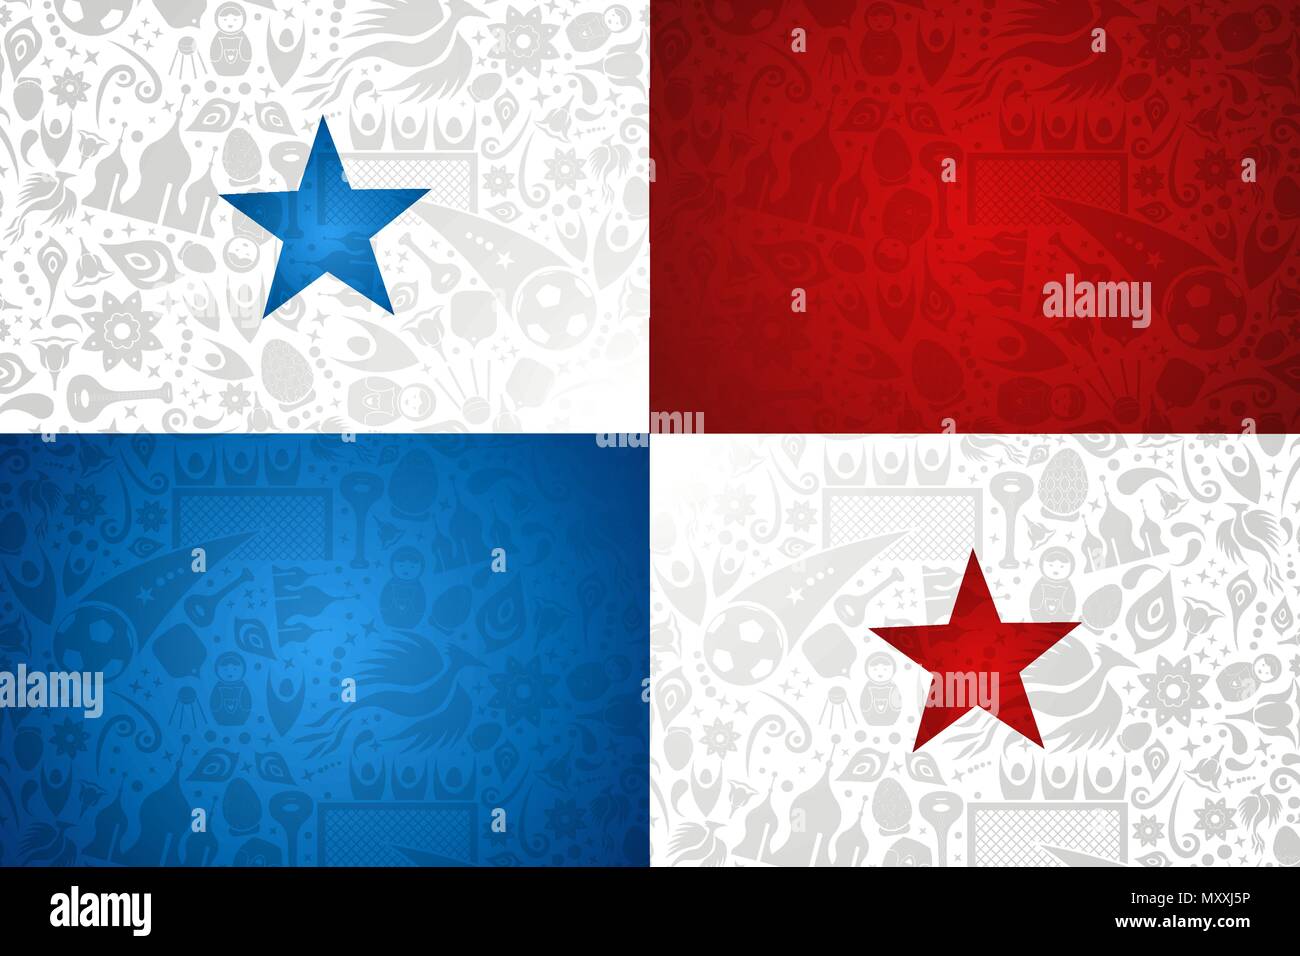 Panama Flagge Hintergrund für besondere Fußball-Sport Ereignis. Mit russischen Stil Ikonen. EPS 10 Vektor. Stock Vektor